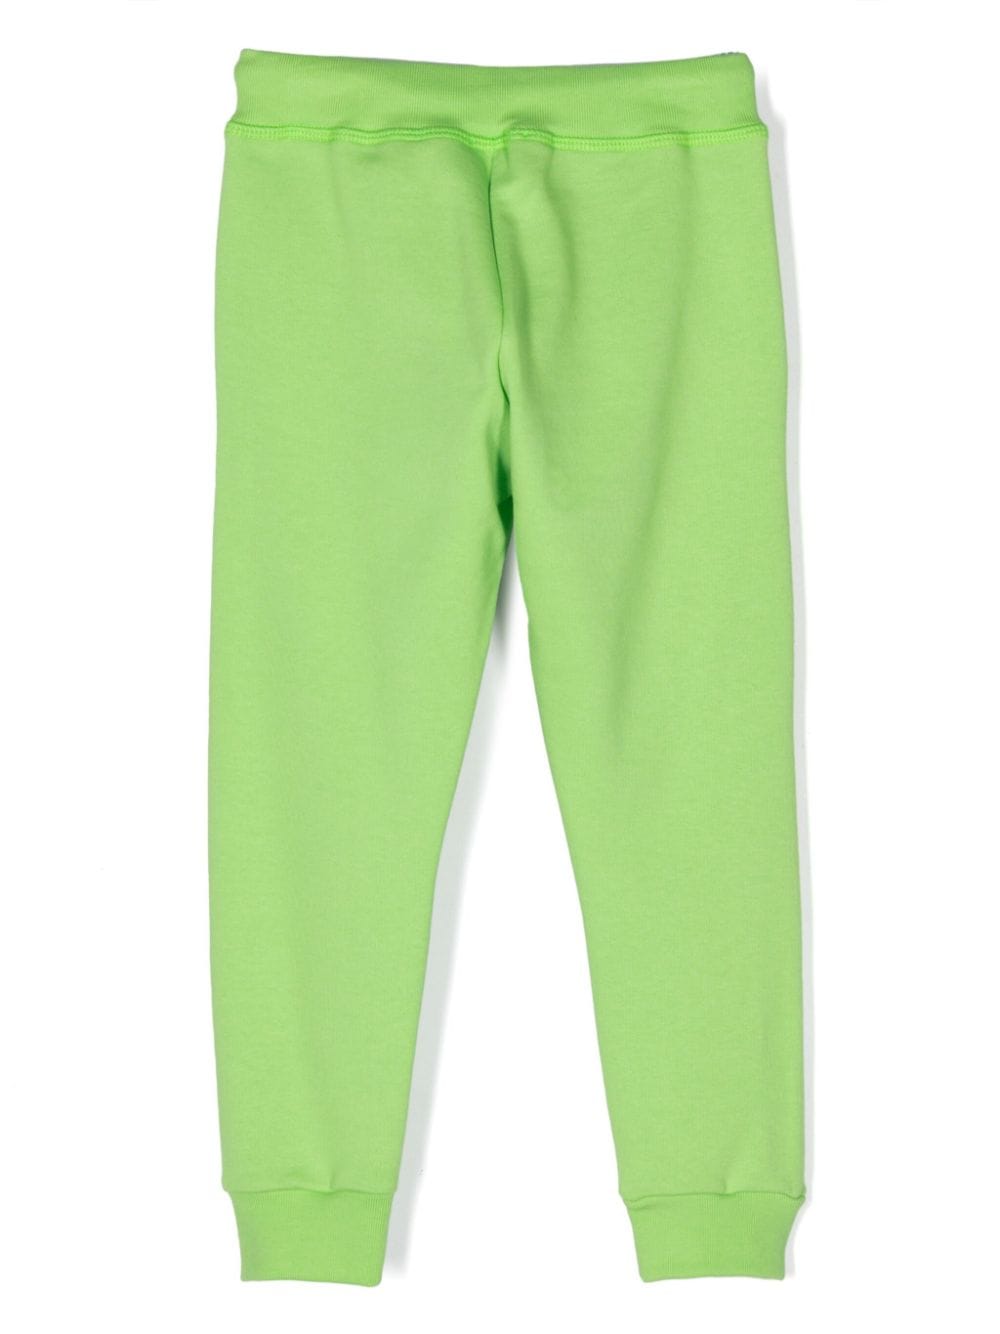 Pantalone sportivo verde per bambino con stampa